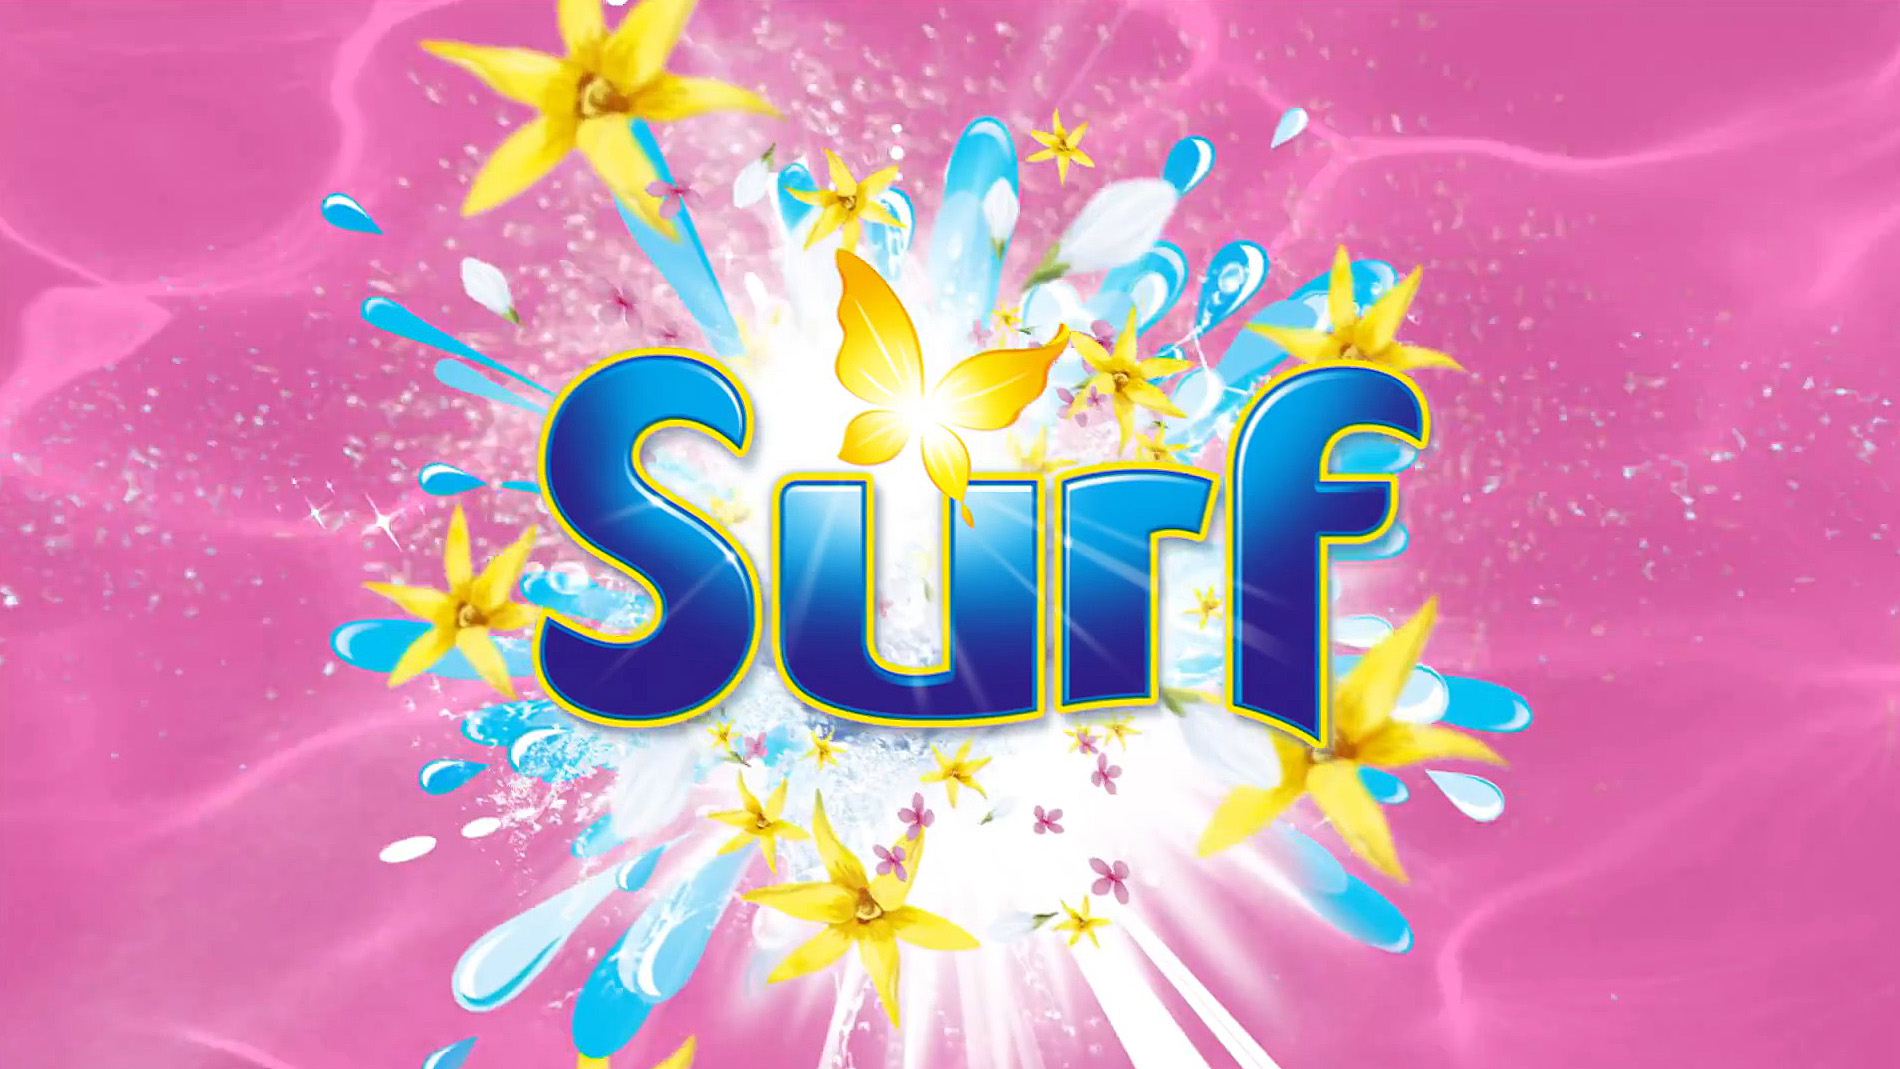 Surf - Reklamní spot na prací prášek